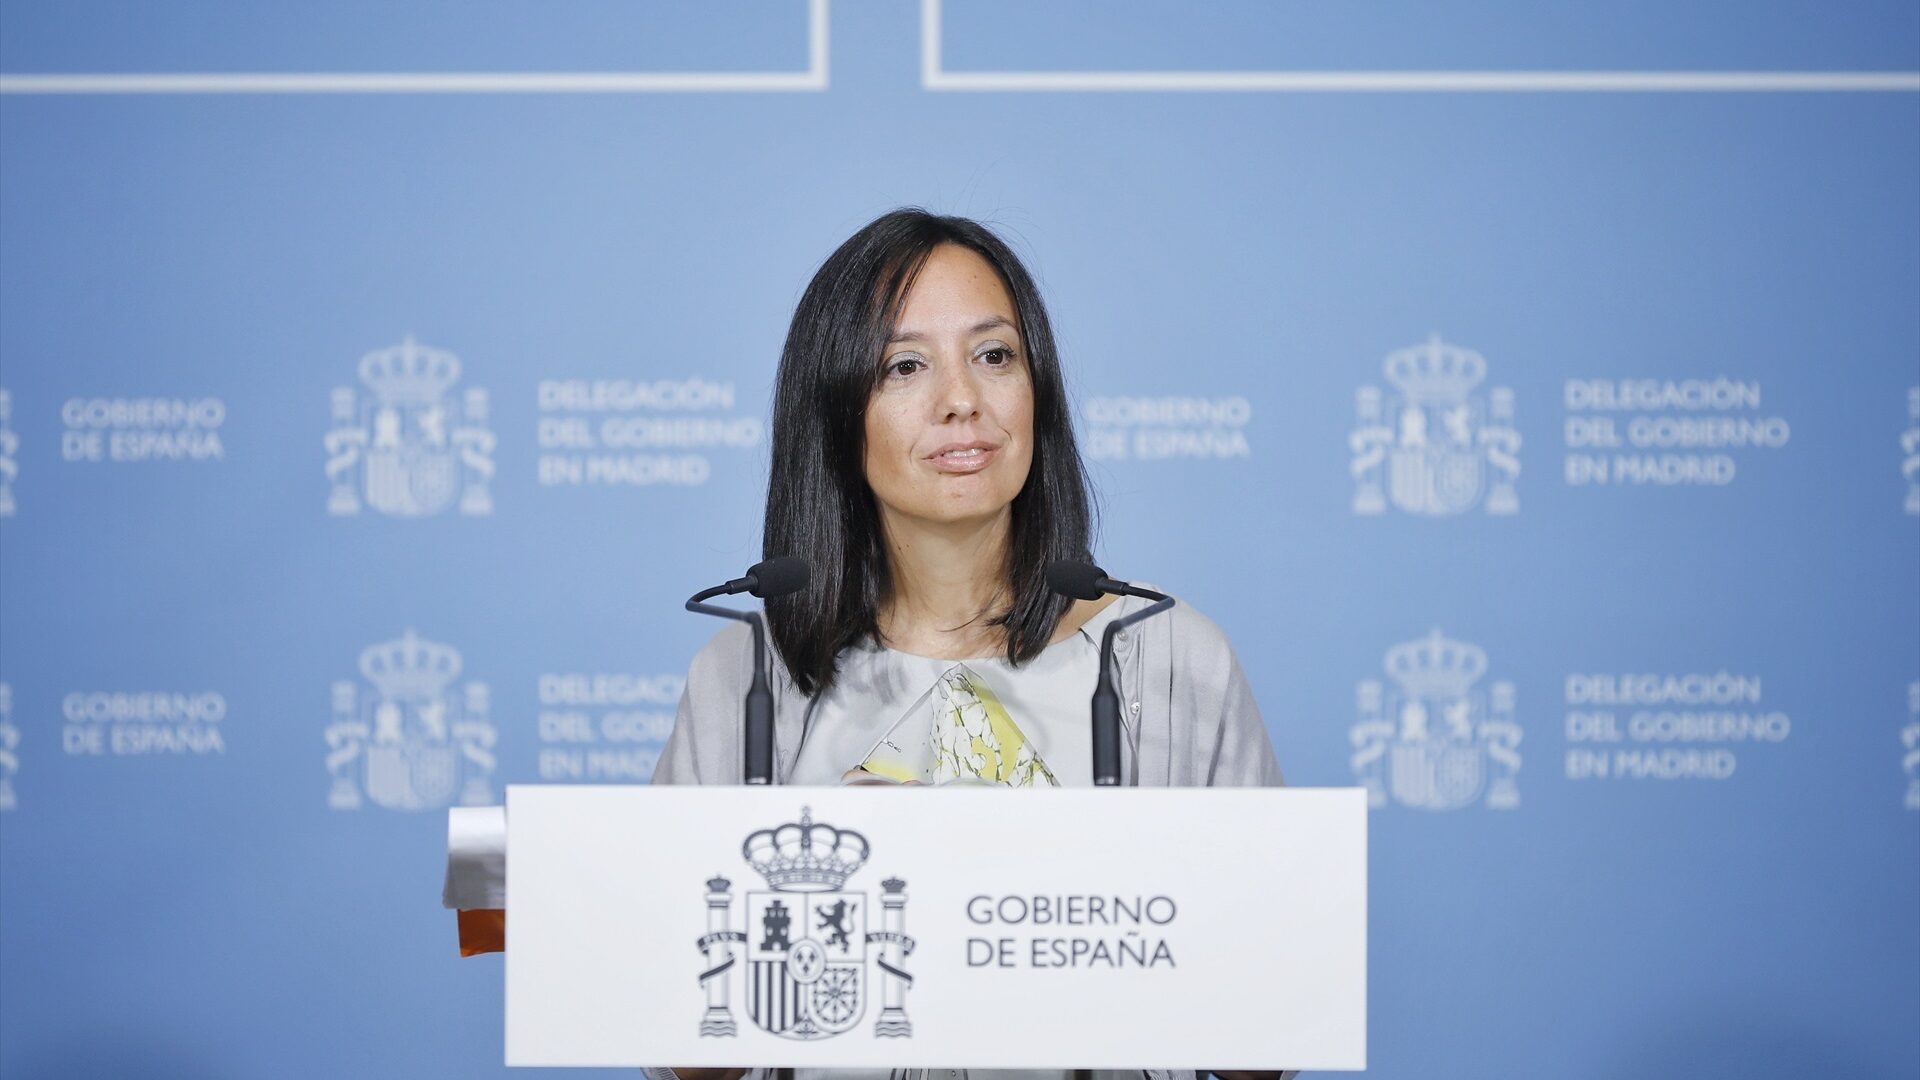 La delegada del Gobierno critica hablar de "castigo" en los PGE con una inversión en Madrid "muy por encima" de la media